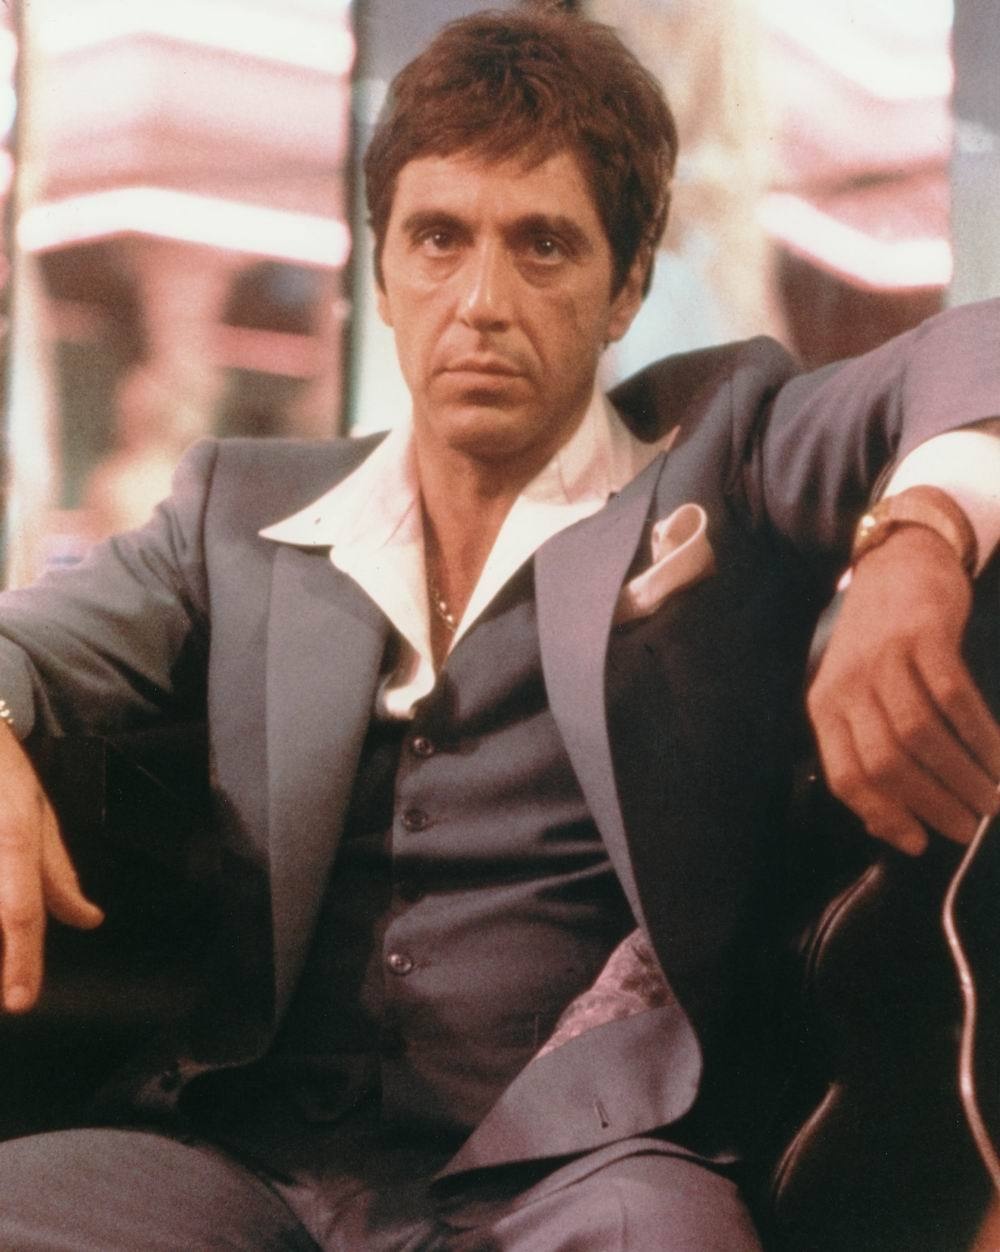 Al Pacino zrezygnował z roli Hana Solo. Dlaczego? 